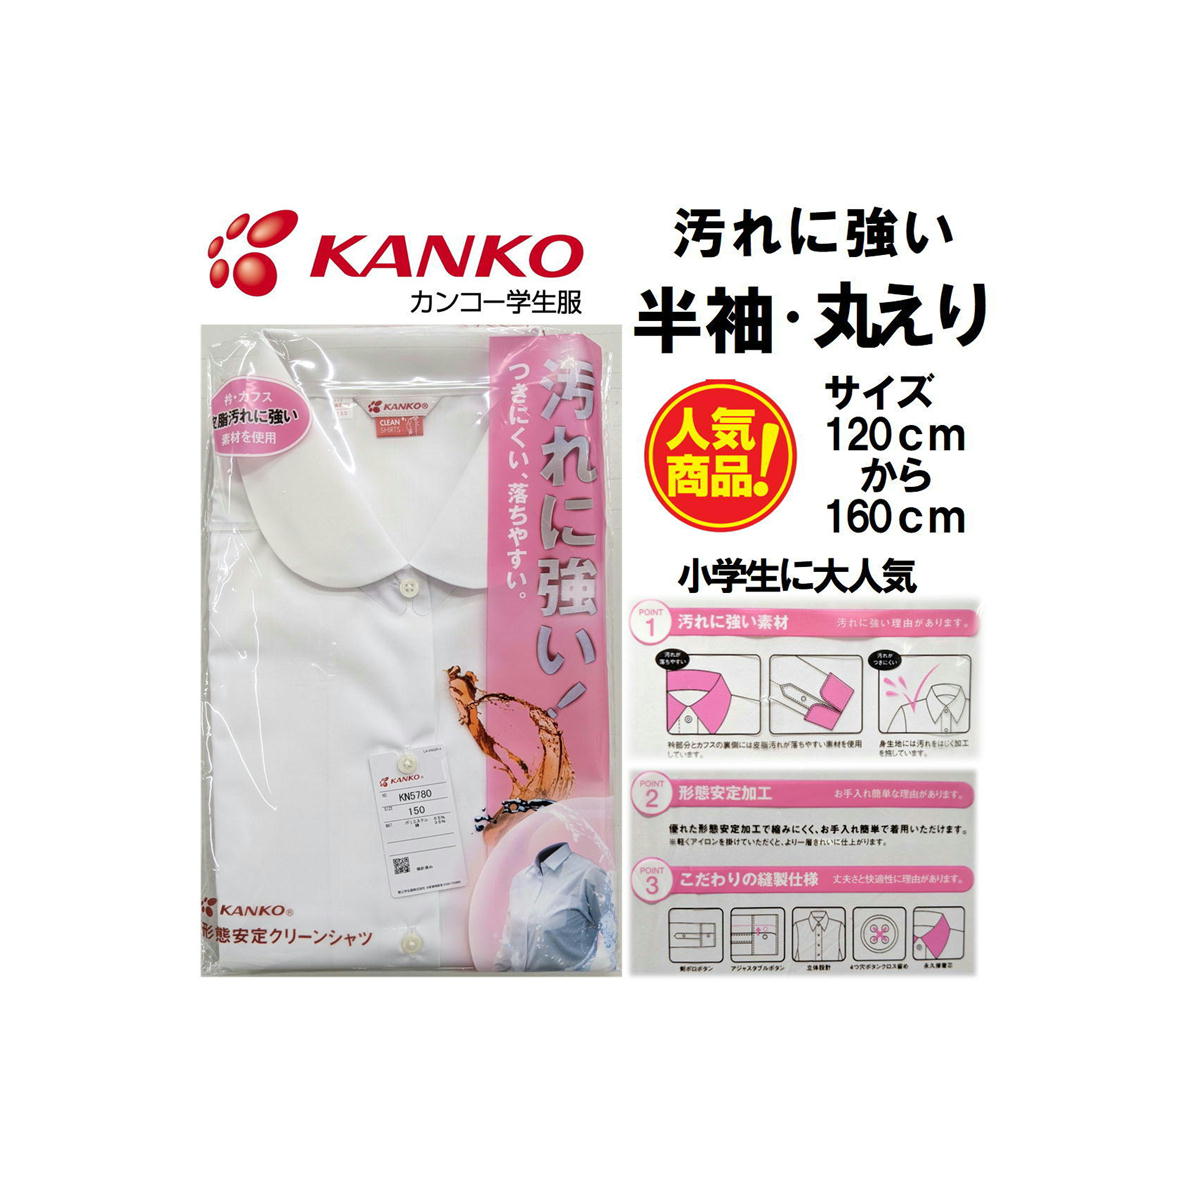 女子スクールシャツ 半袖 KANKO カンコールームドライ スクールシャツ 品番：KN5780 サイズ：120cm〜160cm 素材：綿35％　ポリエステル65％ カラー：ホワイト ≪汚れに強い クリーンシャツの特徴≫ 衿部分には汚れが落ちやすい素材を使用しています 汚れが付きにくい加工 優れた形態安定加工で縮みにくく、お手入れ簡単で着用 こだわりの縫製加工 ≪お取り扱いについて≫ このシャツは家庭洗濯機が最適です。 洗濯機はネットの使用をお勧めします。 15秒程度の軽脱水で吊り干ししていただくかタンブルドライ（乾燥機）の使用が理想です。 干す前に衿、カウスおよび全体を左右に引っ張り形を整えてください。きれいに仕上がります。 生産：VIETNAM 複数店舗で販売している為、在庫の管理は徹底していますが 時期になりますと急なサイズ切れがおこる場合があります。その際は 直接ご連絡差し上げます。ご理解の程宜しくお願い致します。 ご利用のモニター環境により色合いが異なって見える場合がございます